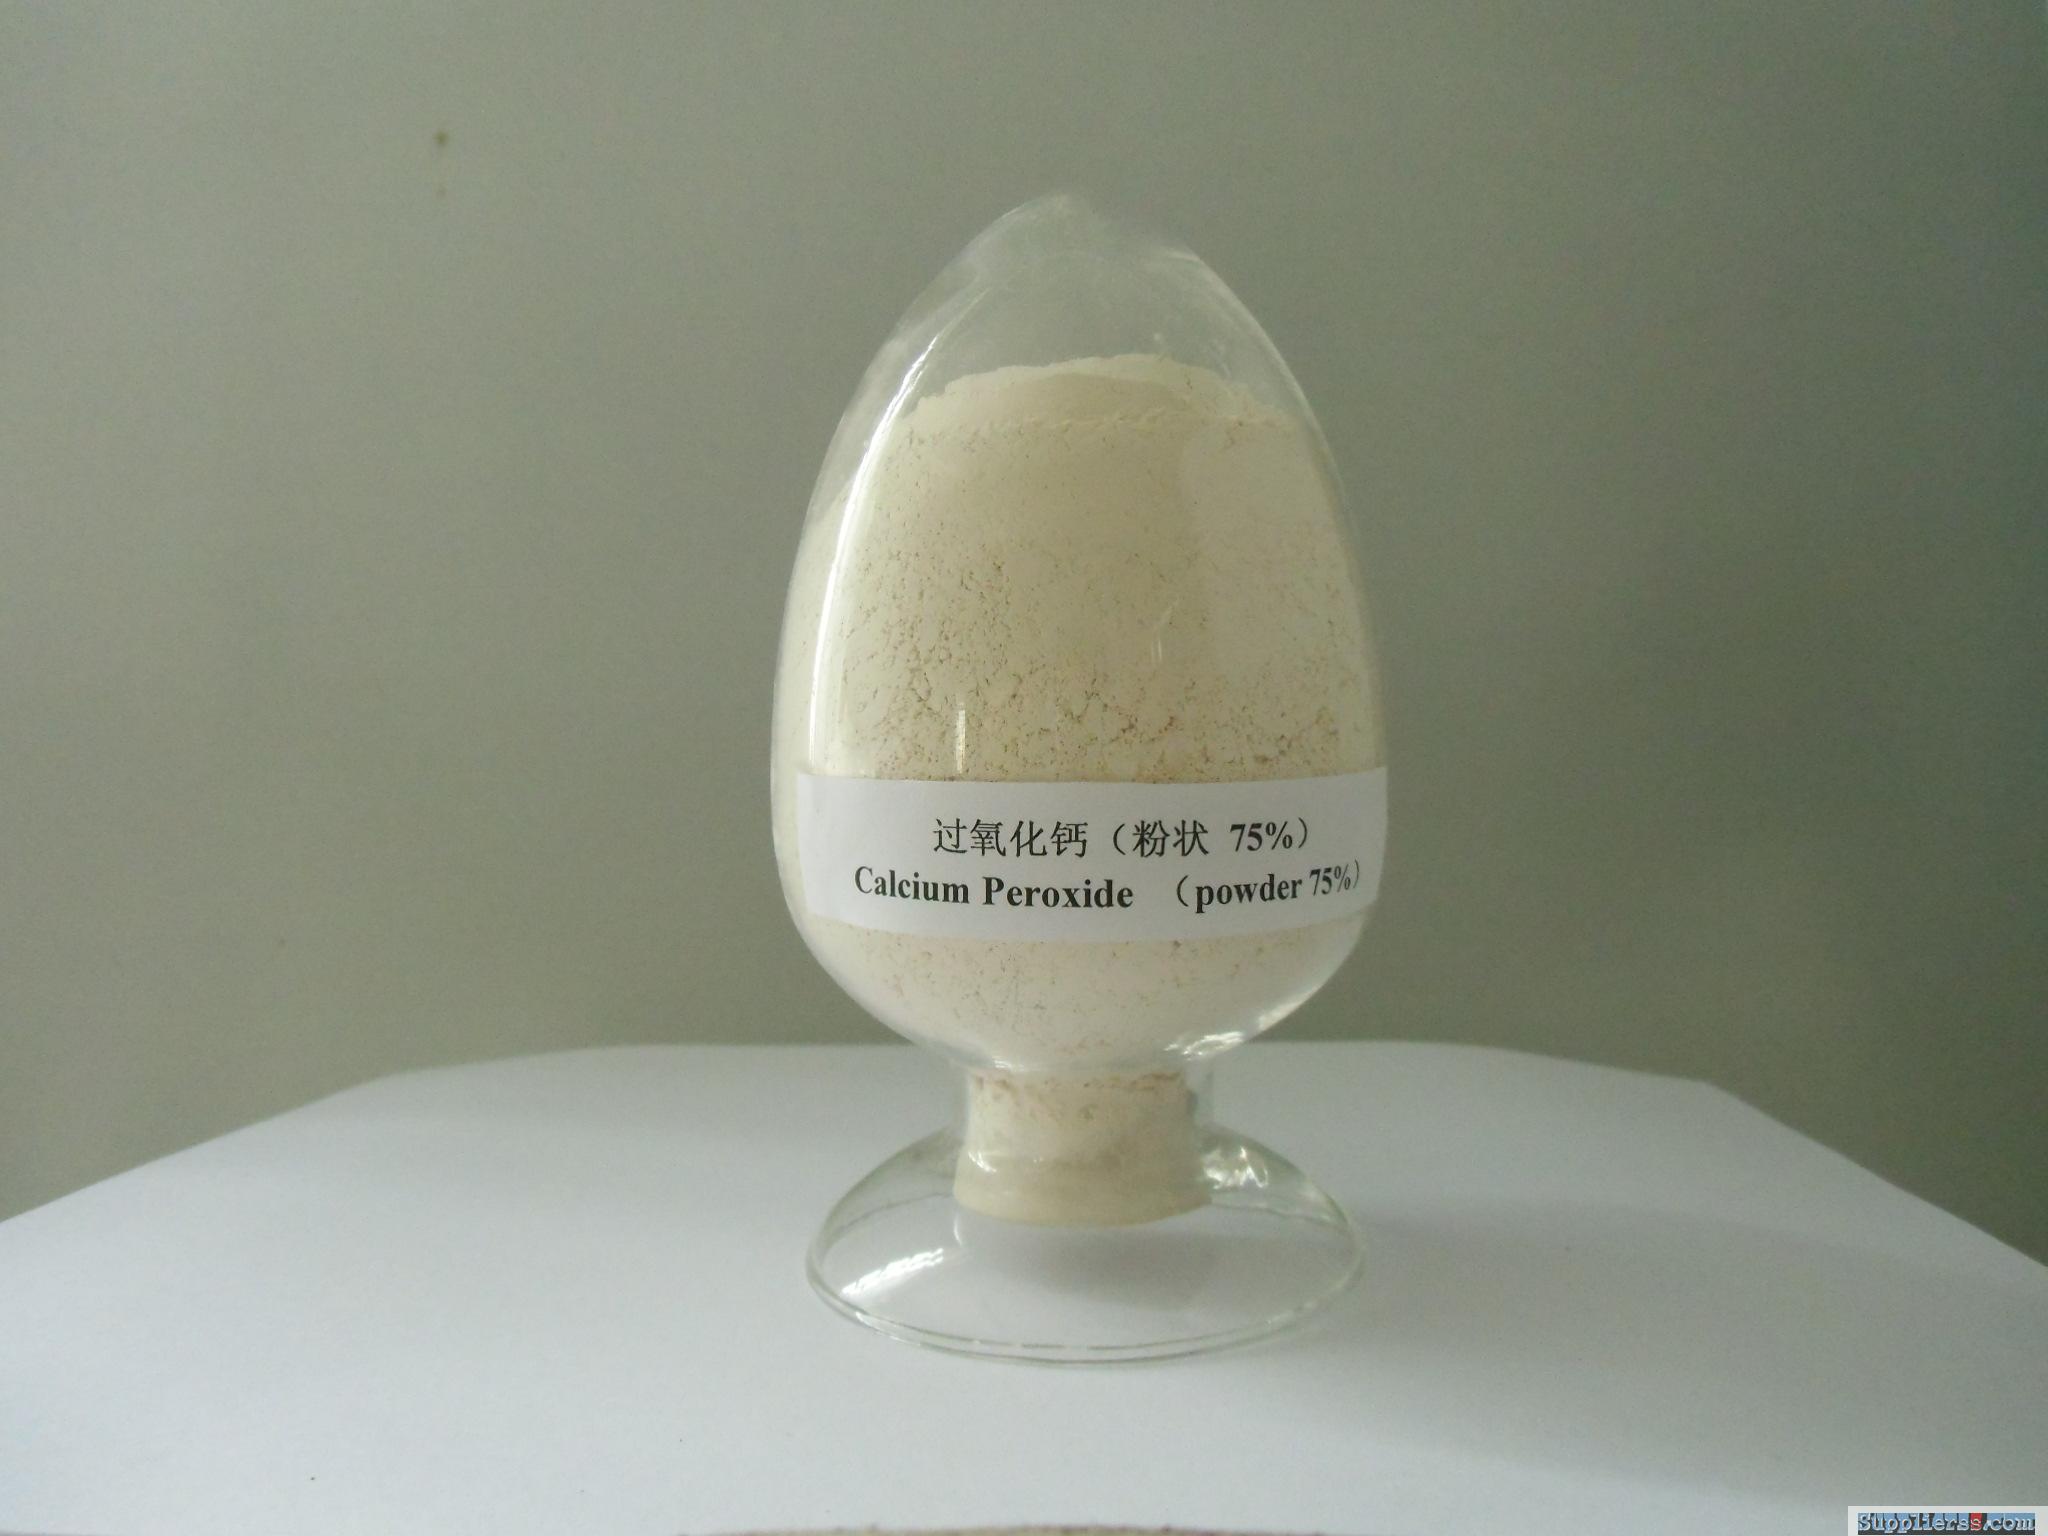 Calcium Peroxide